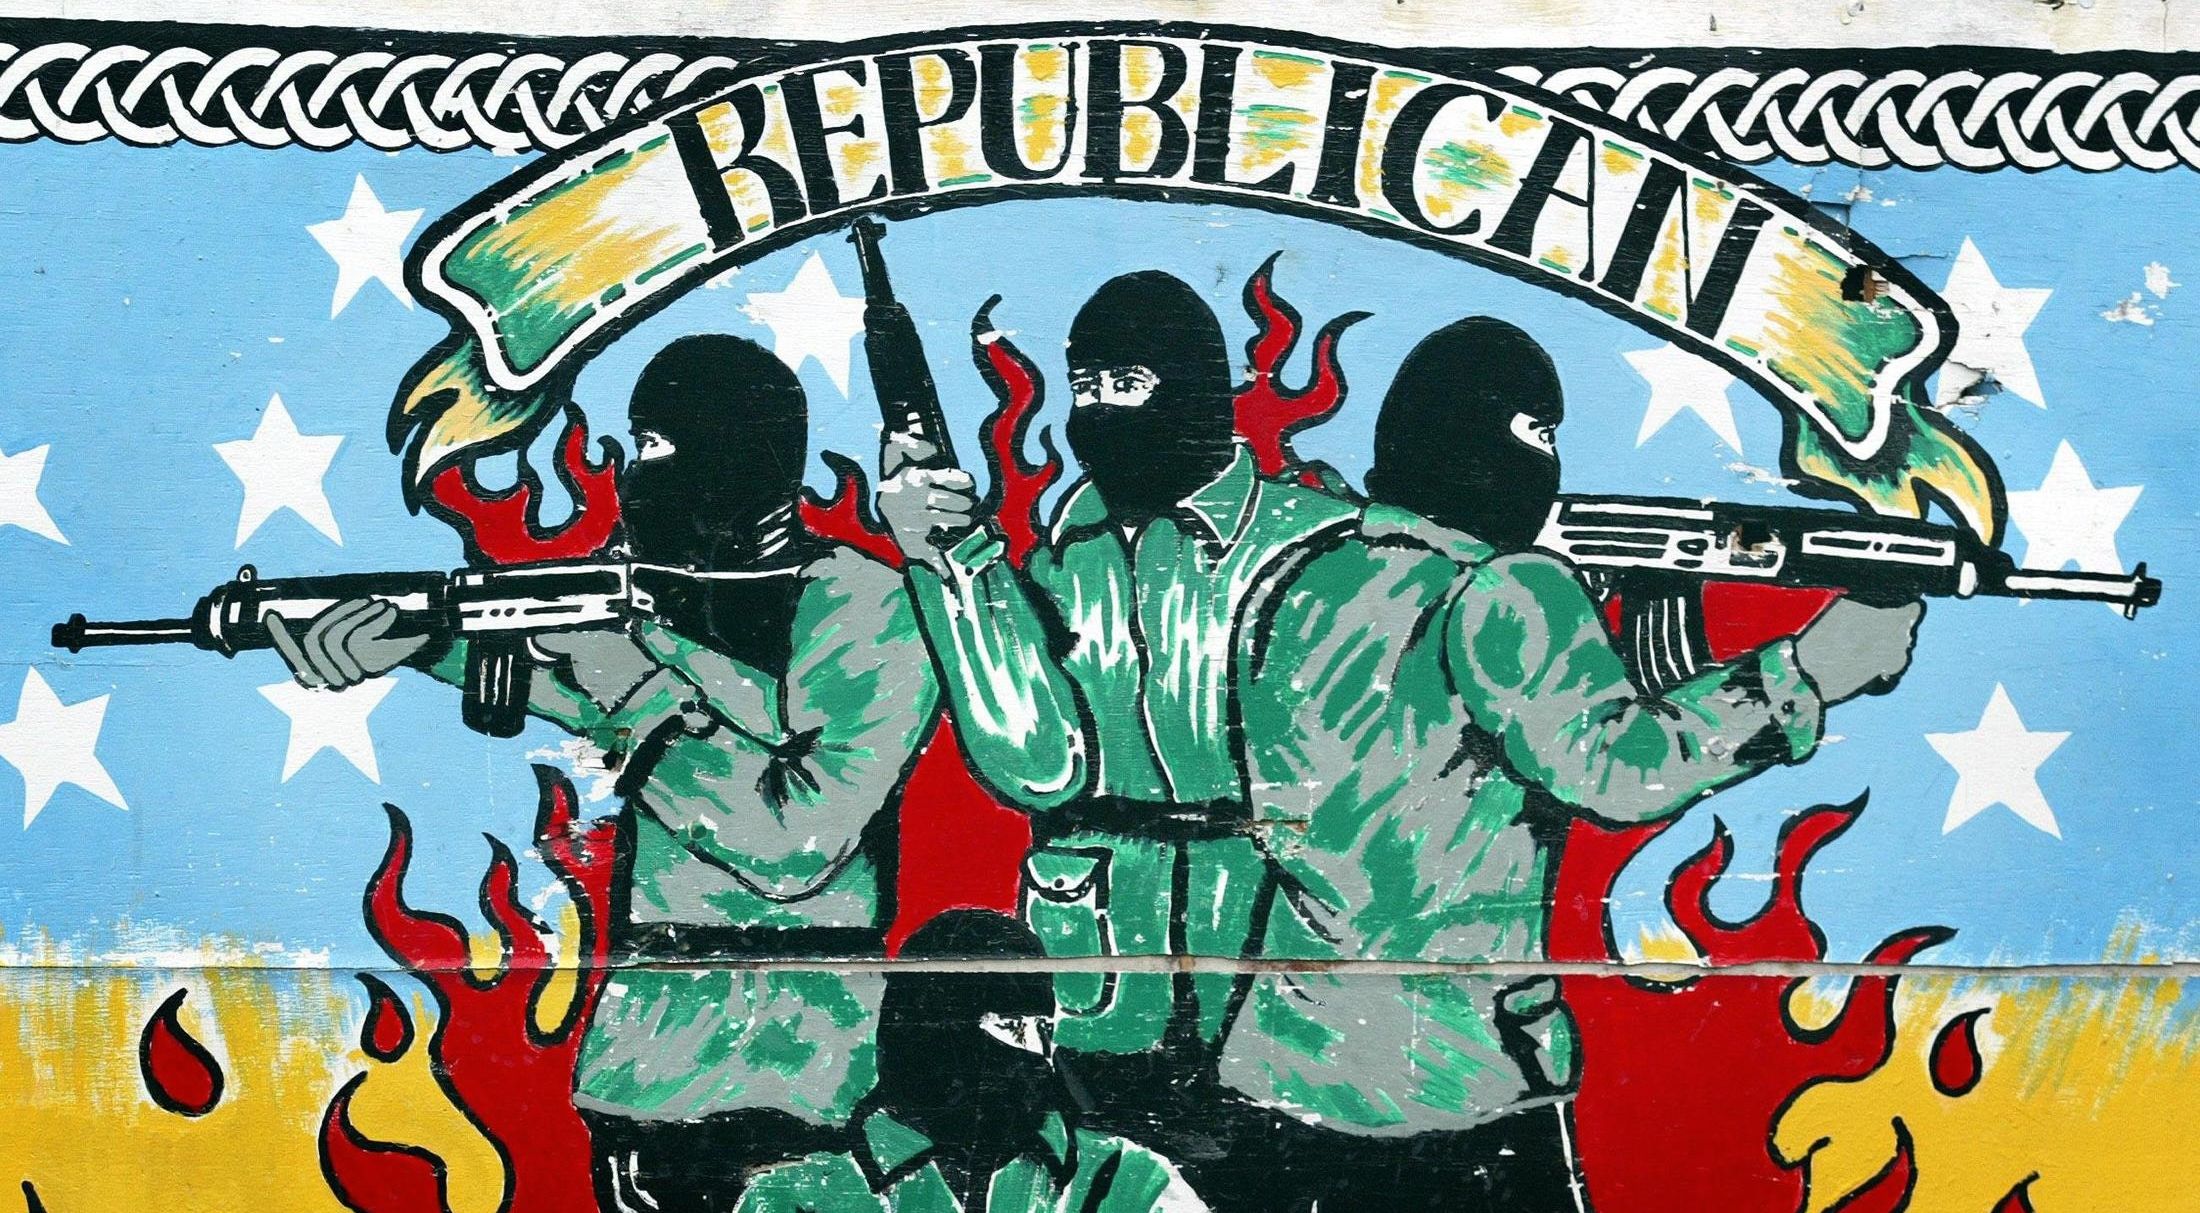 Ira перевод. Ira ирландская Республиканская армия 1917. Ира ирландская Республиканская армия флаг. Ира ирландская Революционная армия. Ирландская Республиканская армия символика.